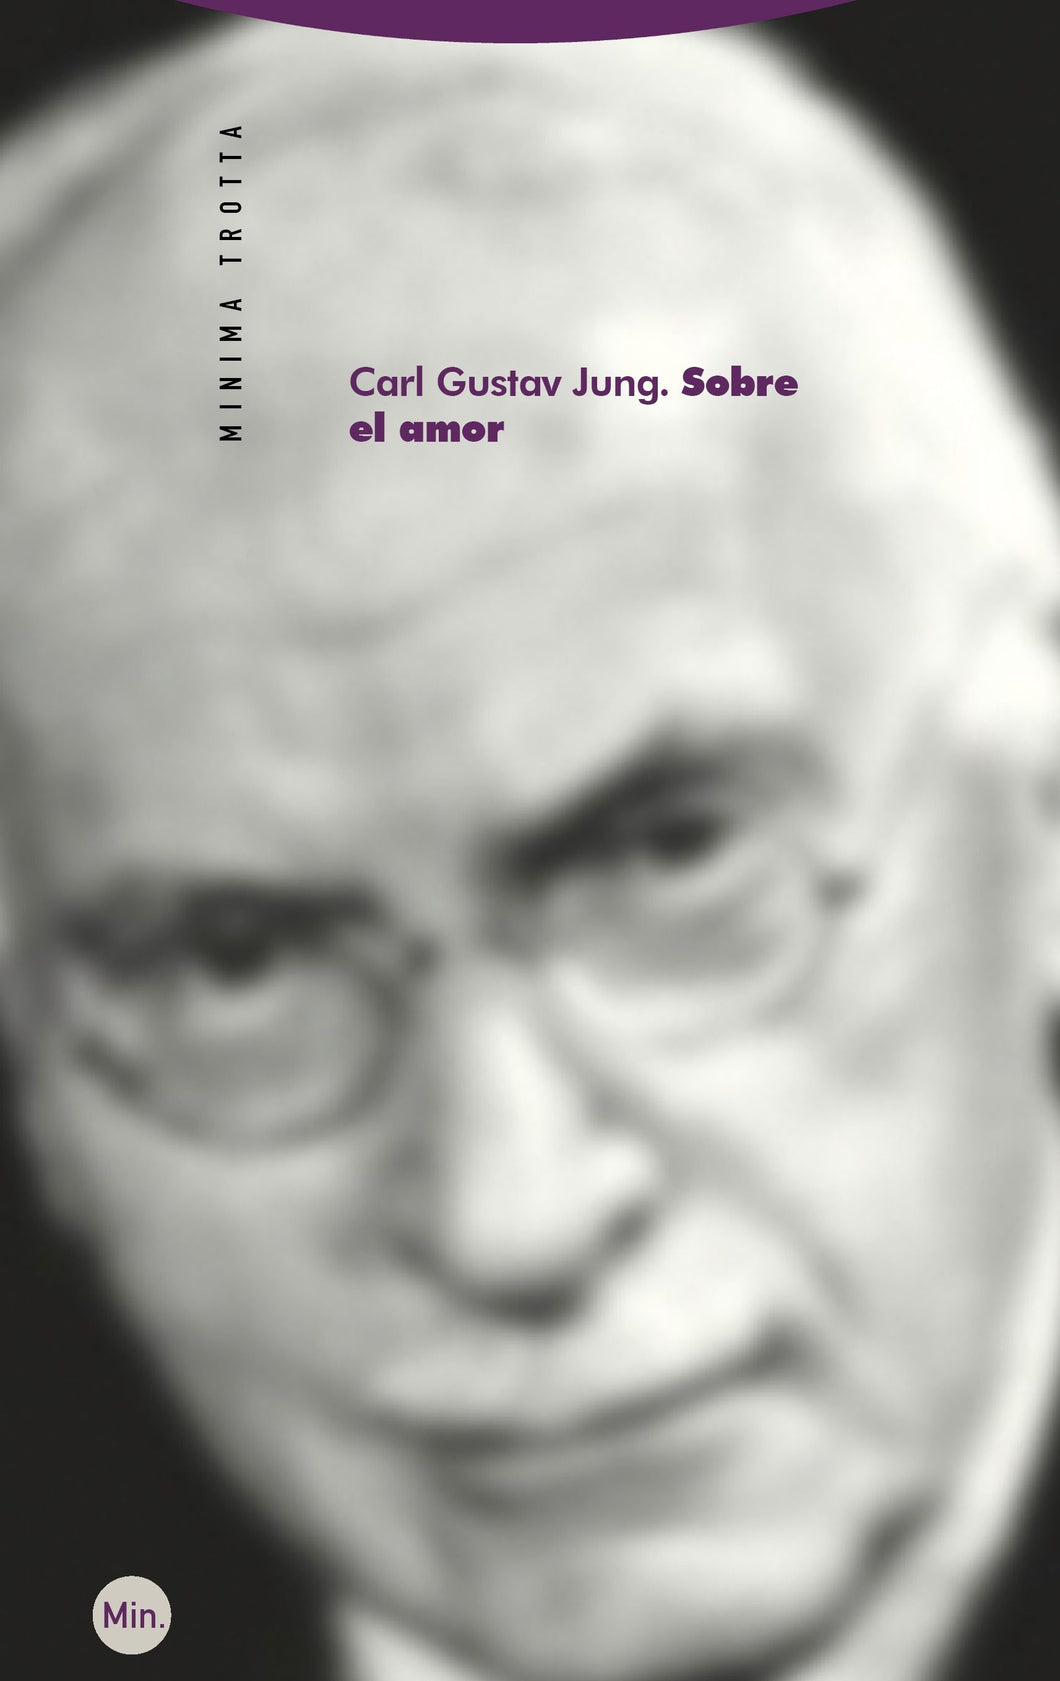 SOBRE EL AMOR - Carl Gustav Jung